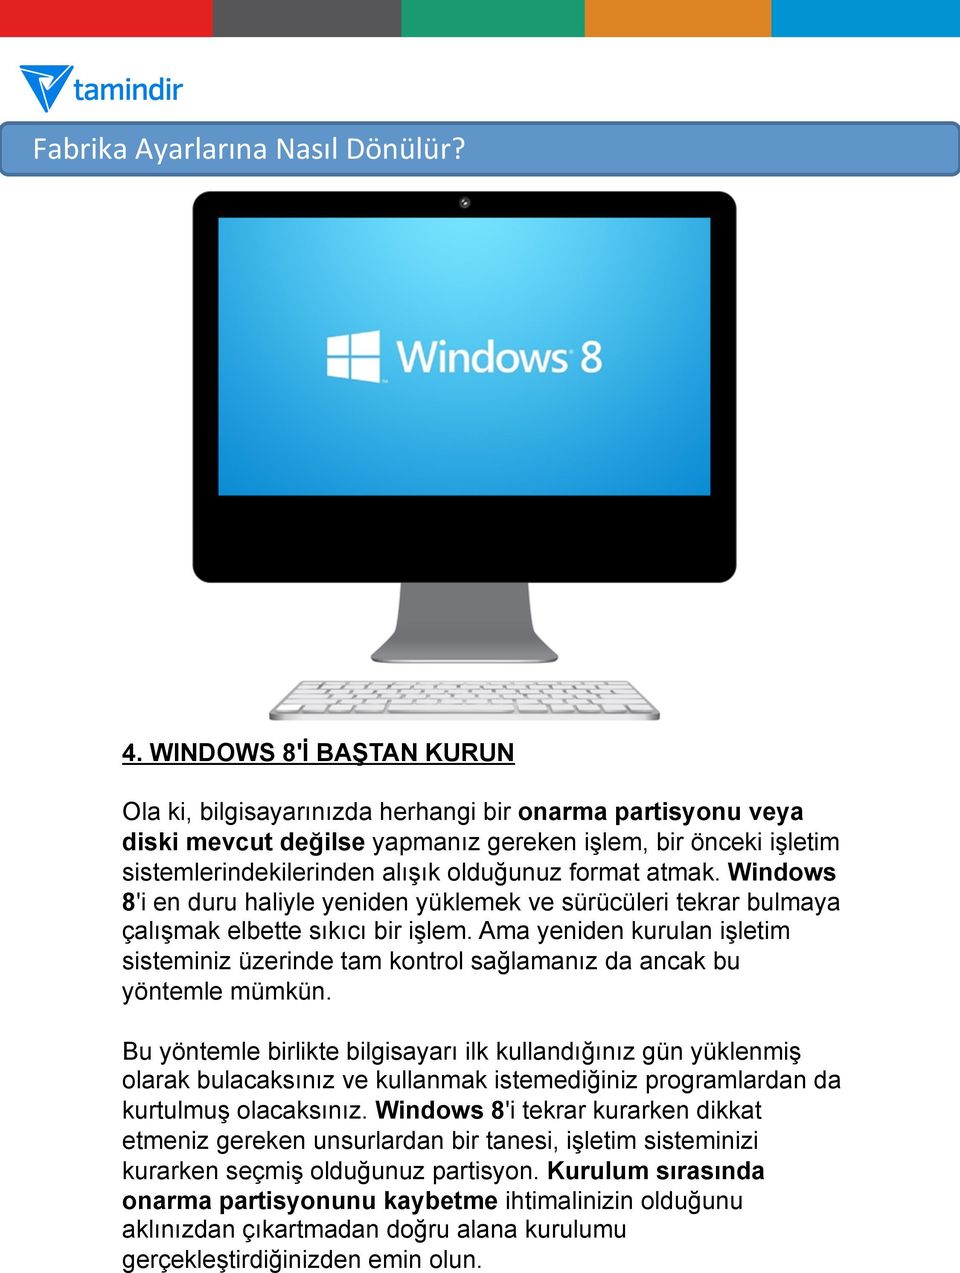 atmak. Windows 8'i en duru haliyle yeniden yüklemek ve sürücüleri tekrar bulmaya çalışmak elbette sıkıcı bir işlem.